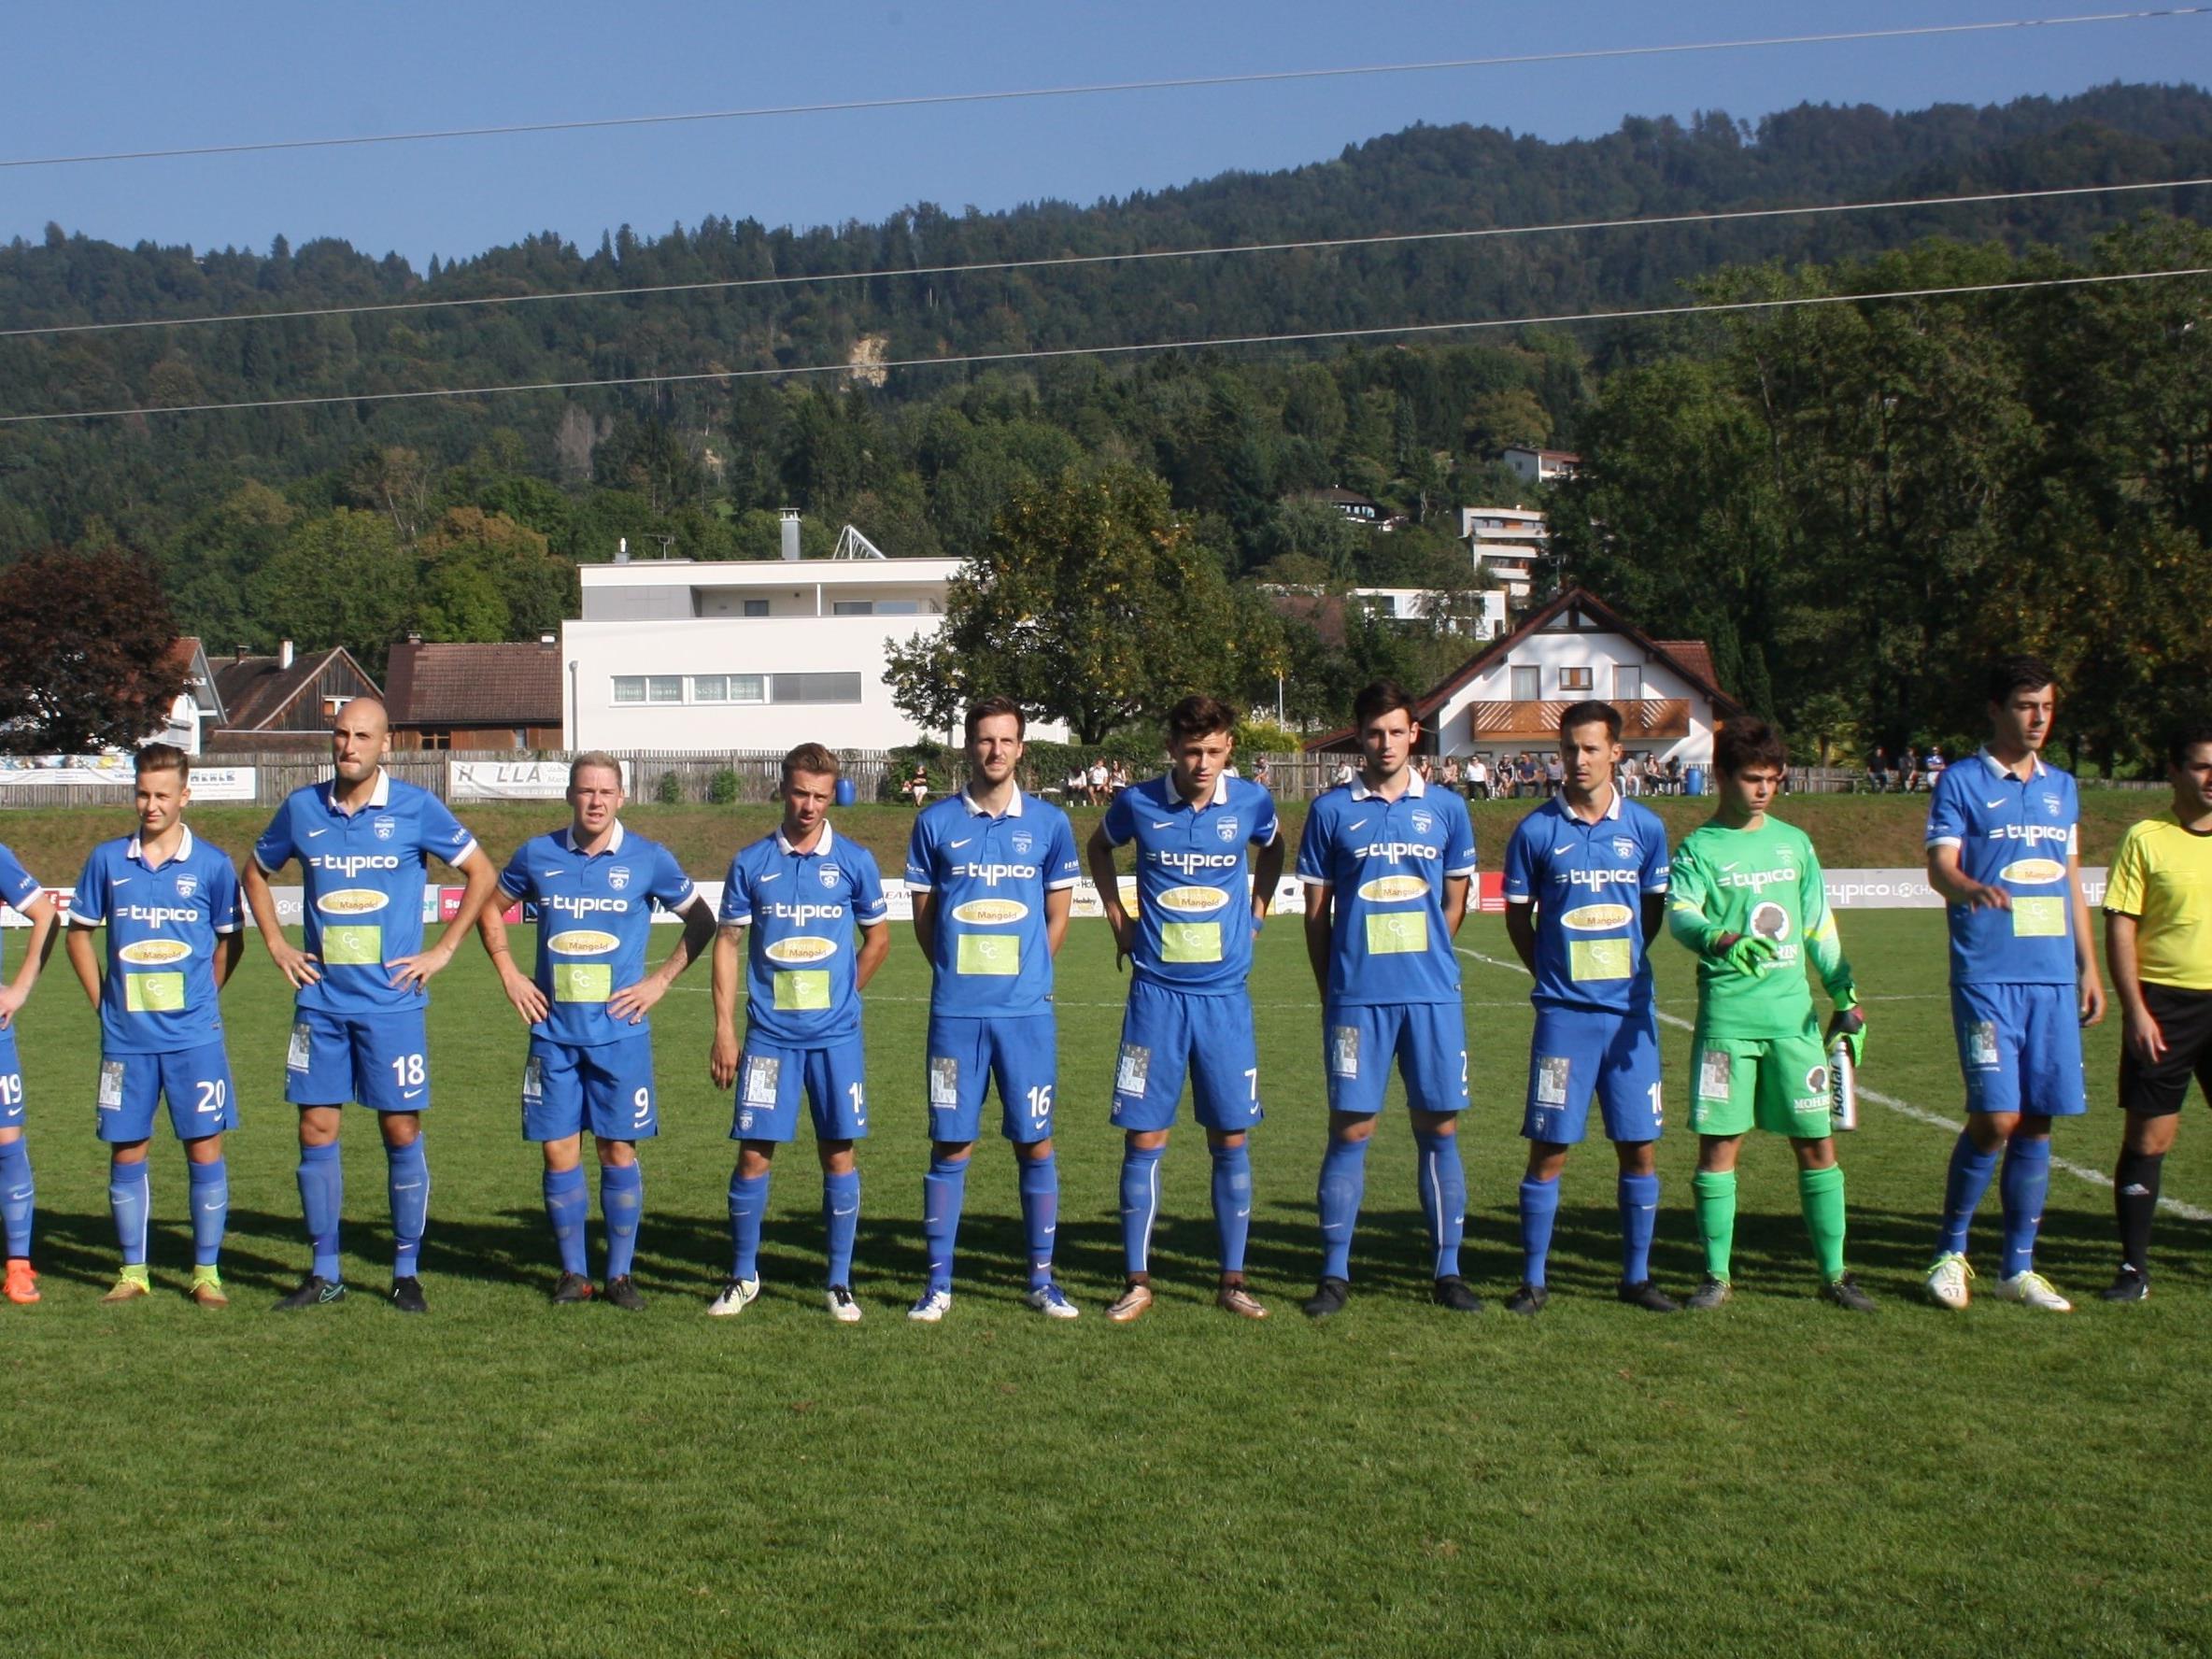 Am Samstag empfängt der SV Typico Lochau (Bild) im Heimspiel das starke Team aus Scharzach. Spielbeginn ist um 16 Uhr.